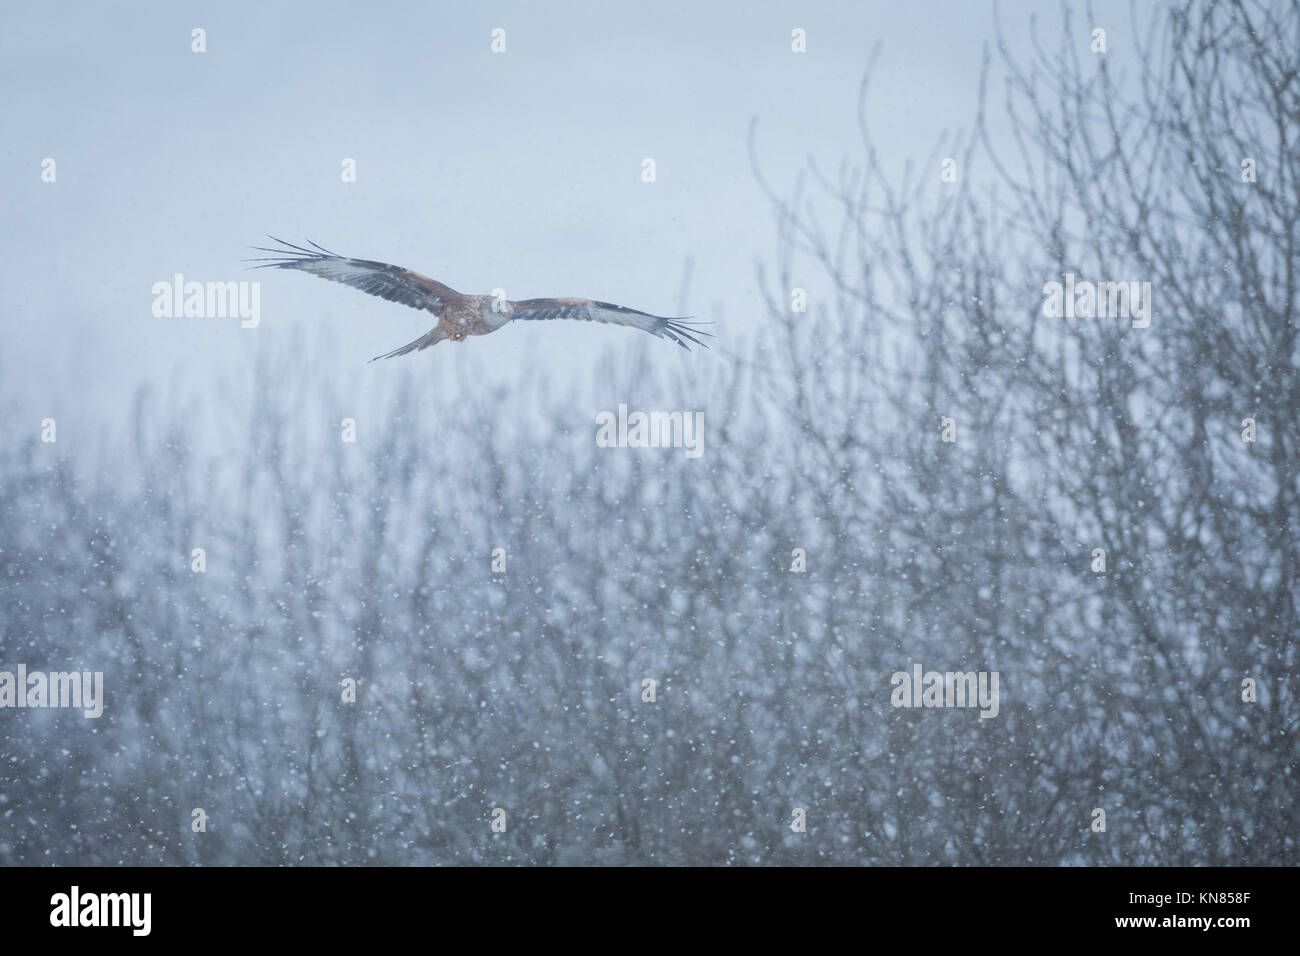 Le Milan royal (Milvus milvus) voler dans la neige. Rhayader, Wales, UK - décembre Banque D'Images